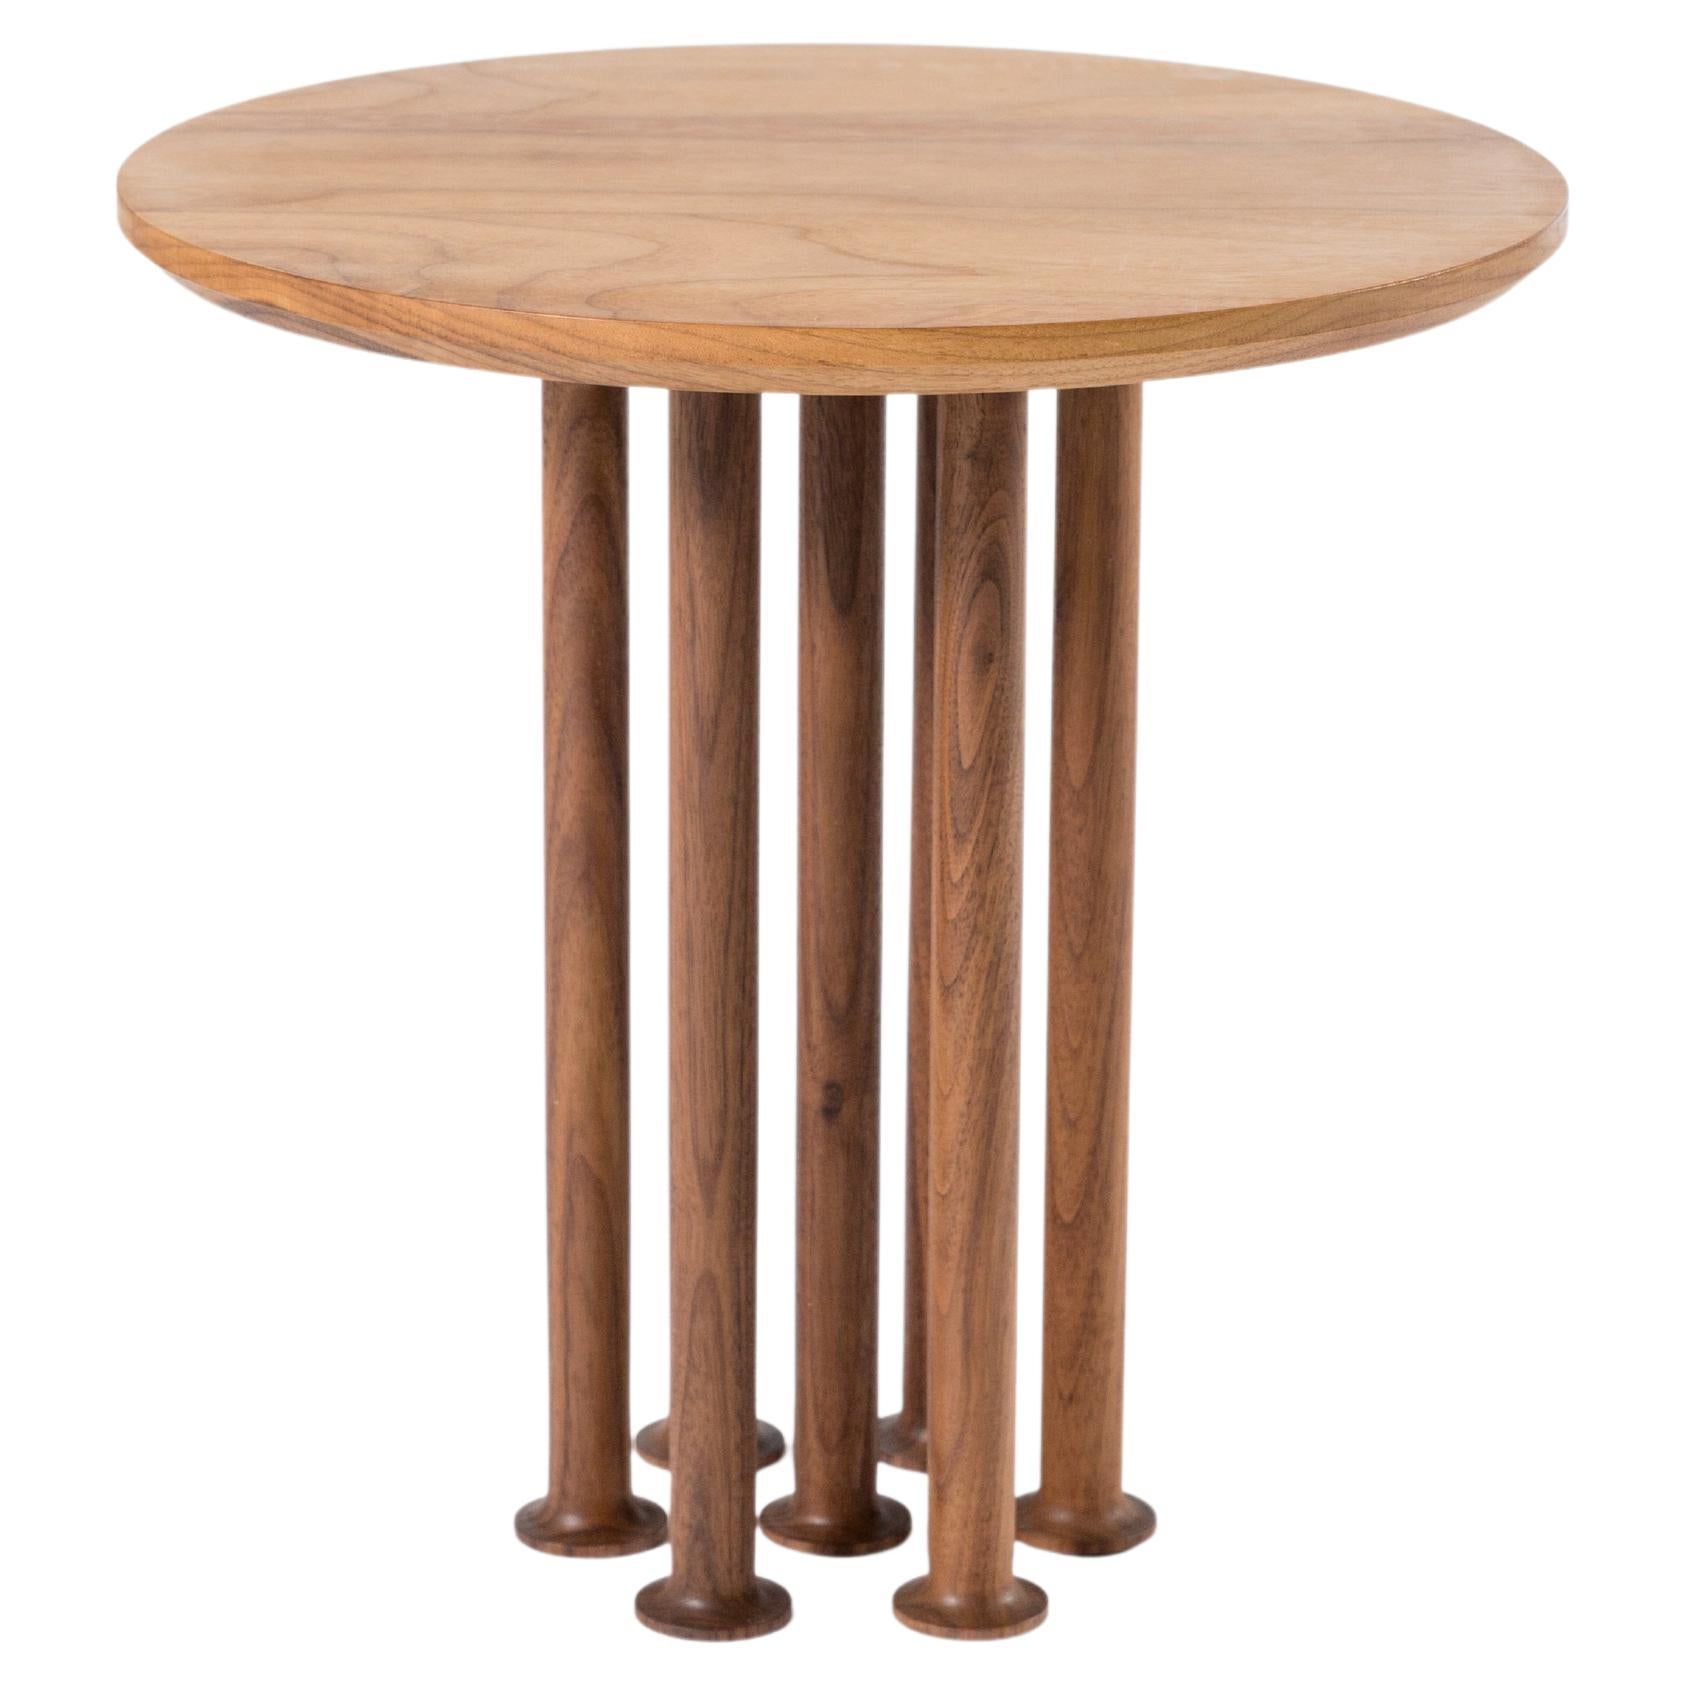 Contemporary Wood Side Table "Molinillo 007 Coffee Table" by Colección Estudio For Sale